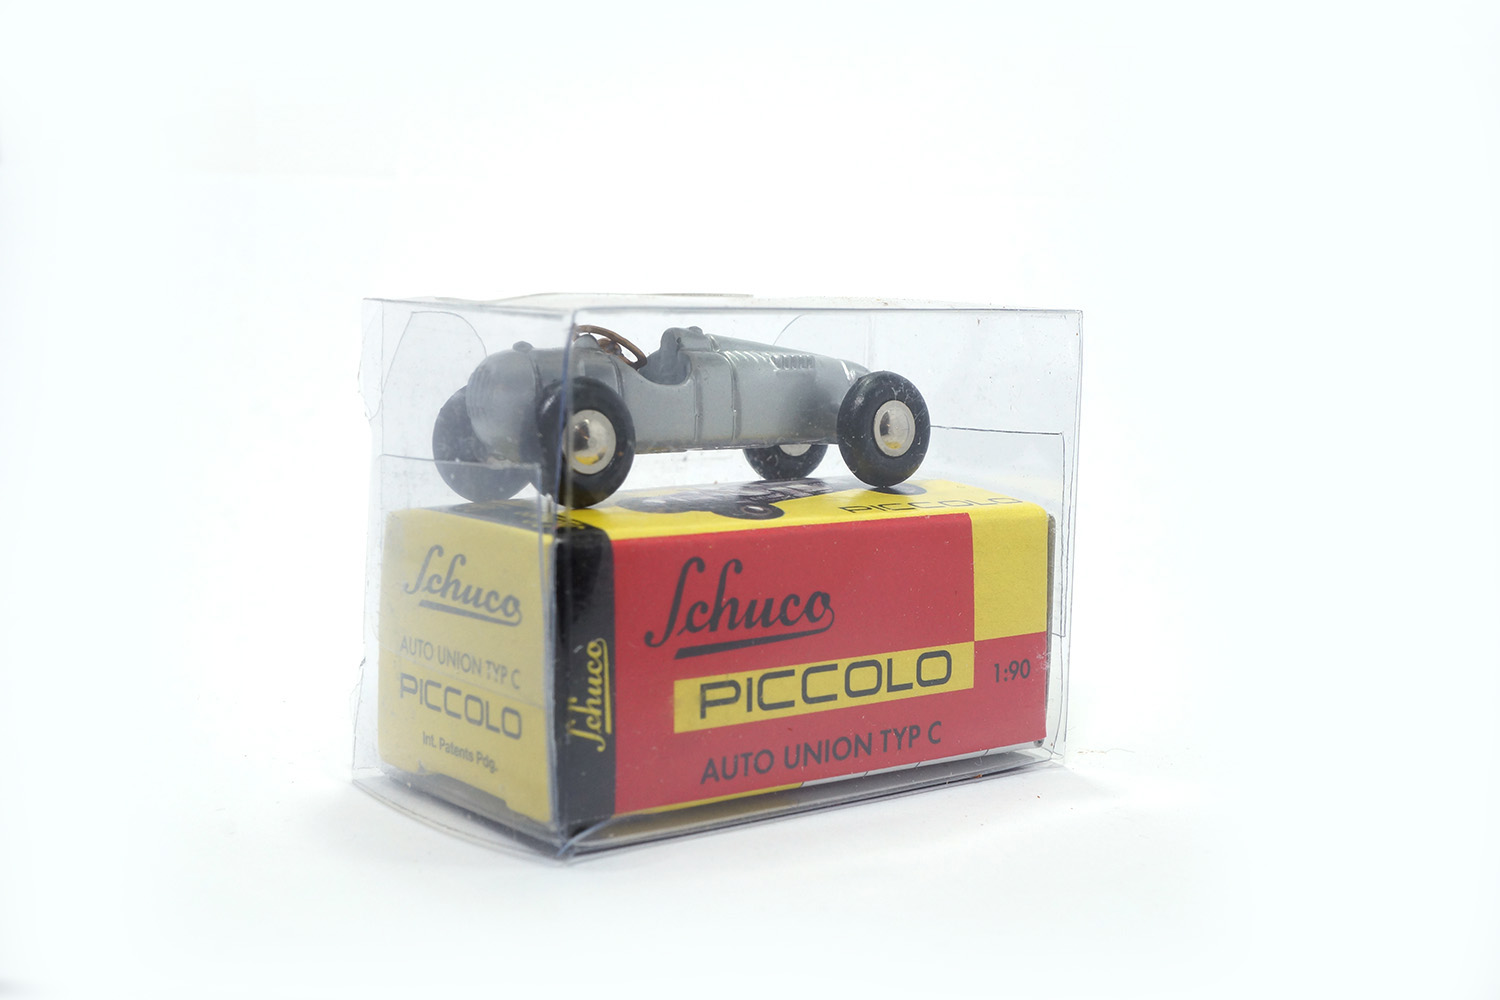 Schuco 01361 Auto Union - Typ C 1:90 (Piccolo)